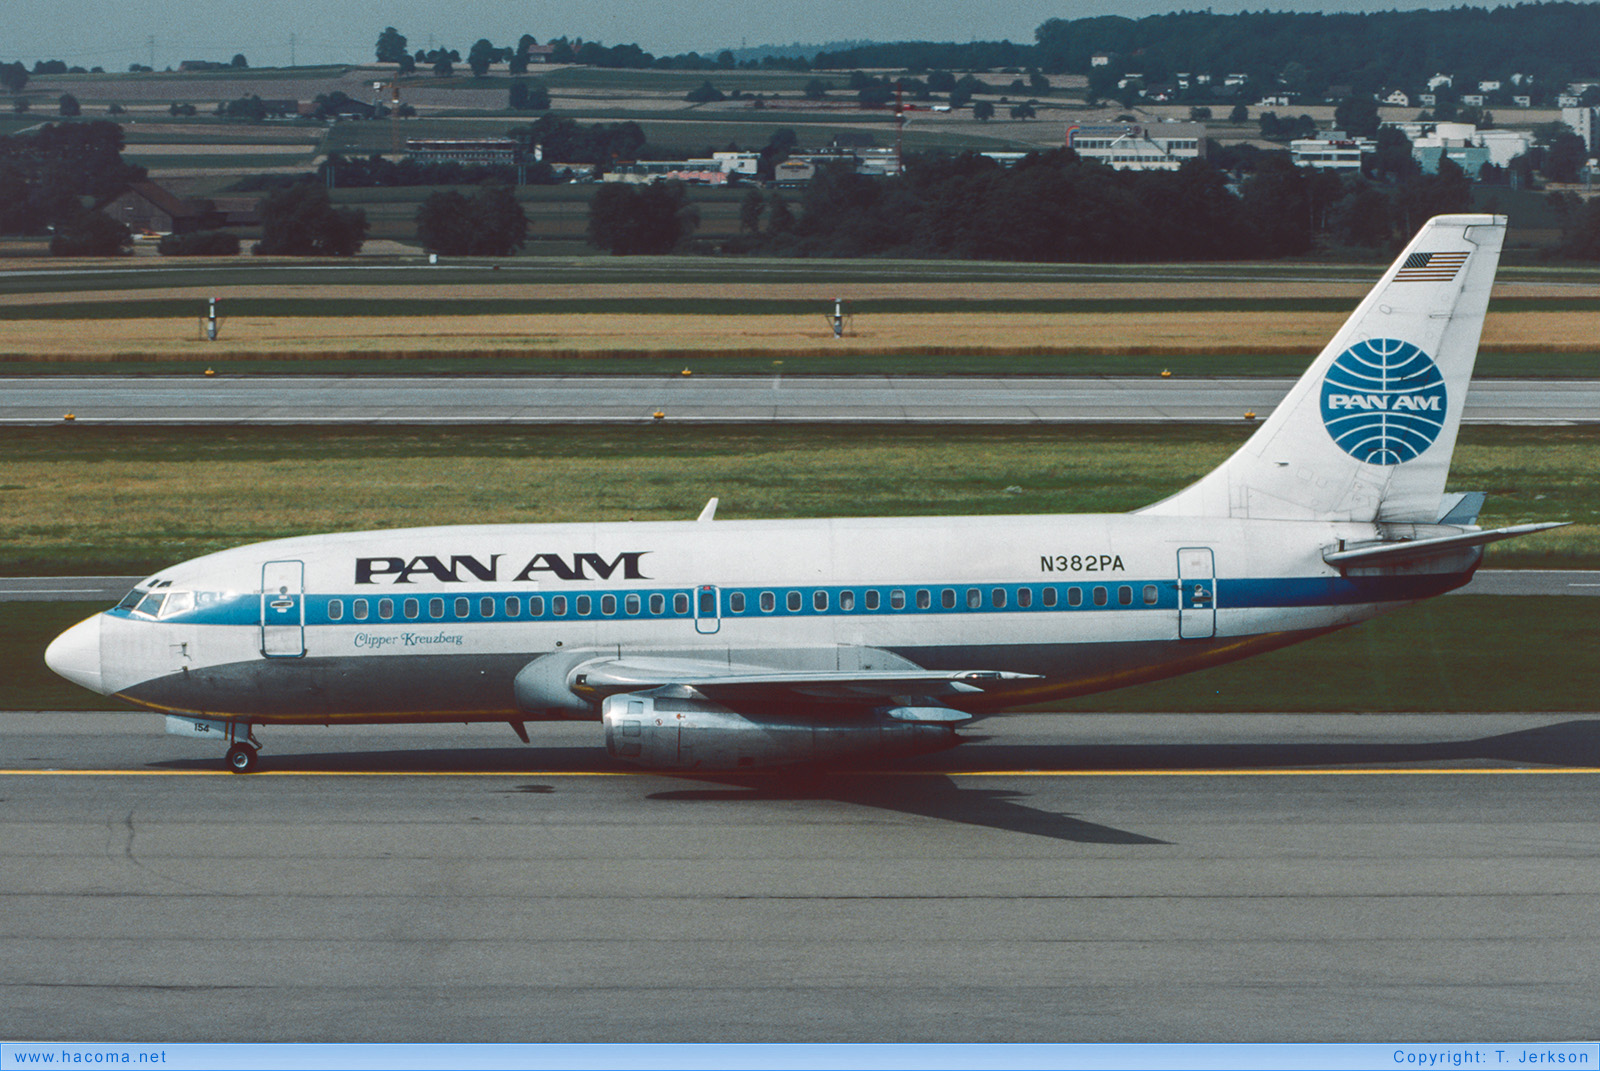 Foto von N382PA - Pan Am Clipper Kreuzberg - Flughafen Zürich - 1985